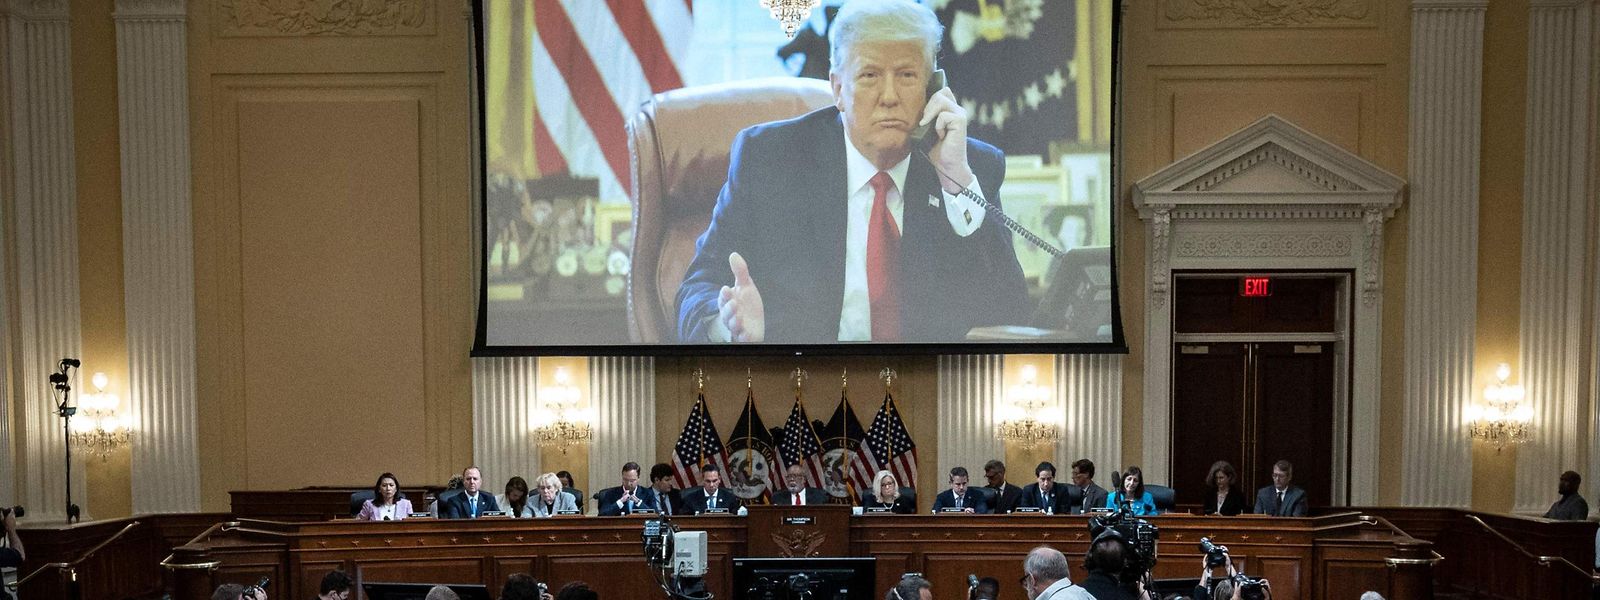 Bei der Anhörung am 16. Juni ist der frühere US-Präsident Donald Trump im Bild.